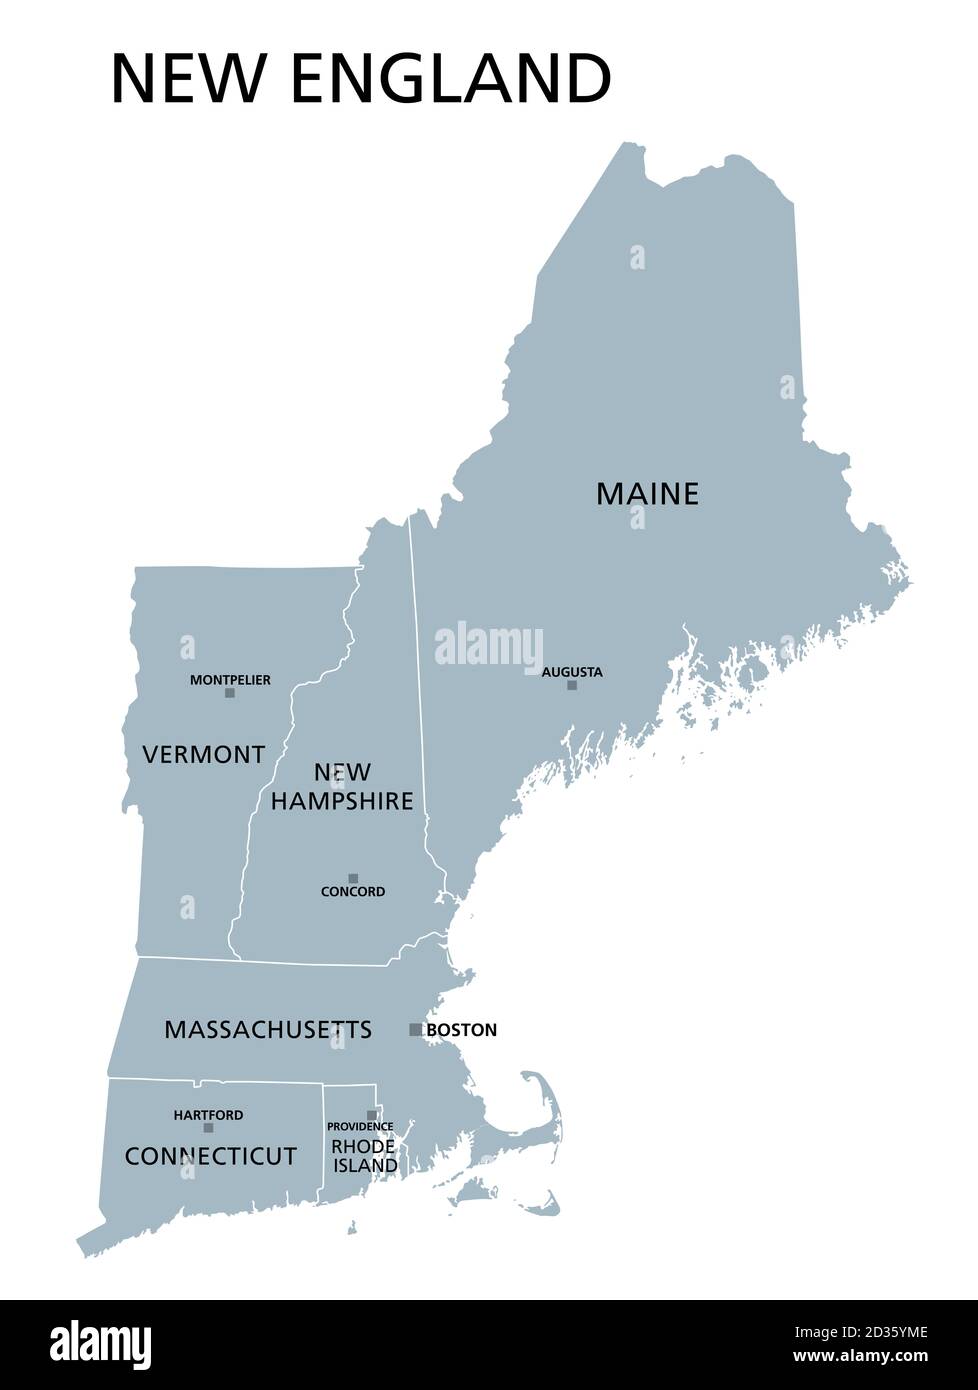 Nueva Inglaterra región de los Estados Unidos, mapa político gris. Los seis estados de Maine, Vermont, New Hampshire, Massachusetts, Rhode Island y Connecticut Foto de stock